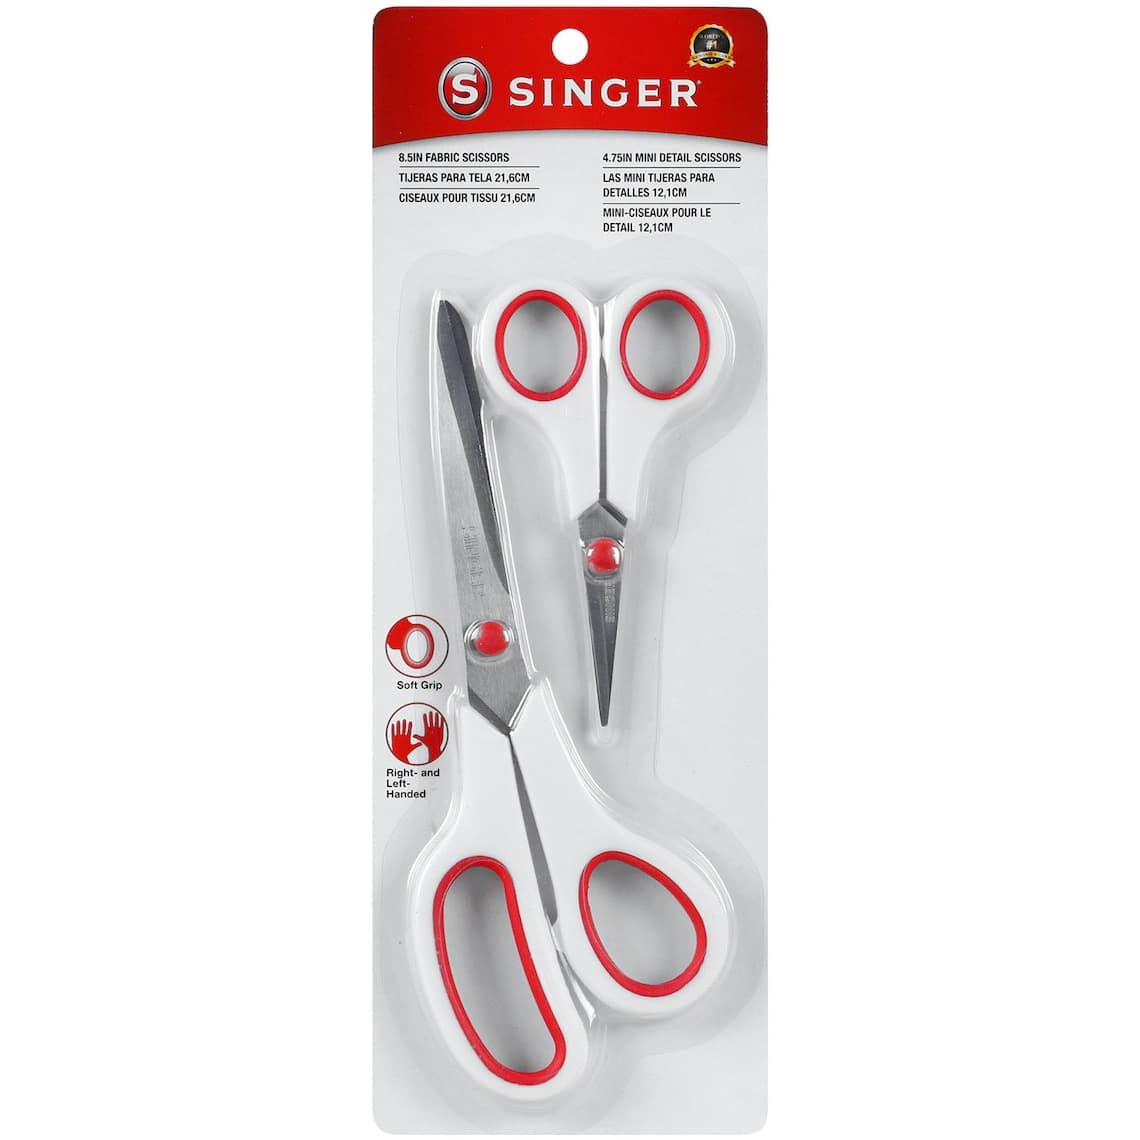 SINGER® Fabric & Craft Scissors With Comfort Grip Set